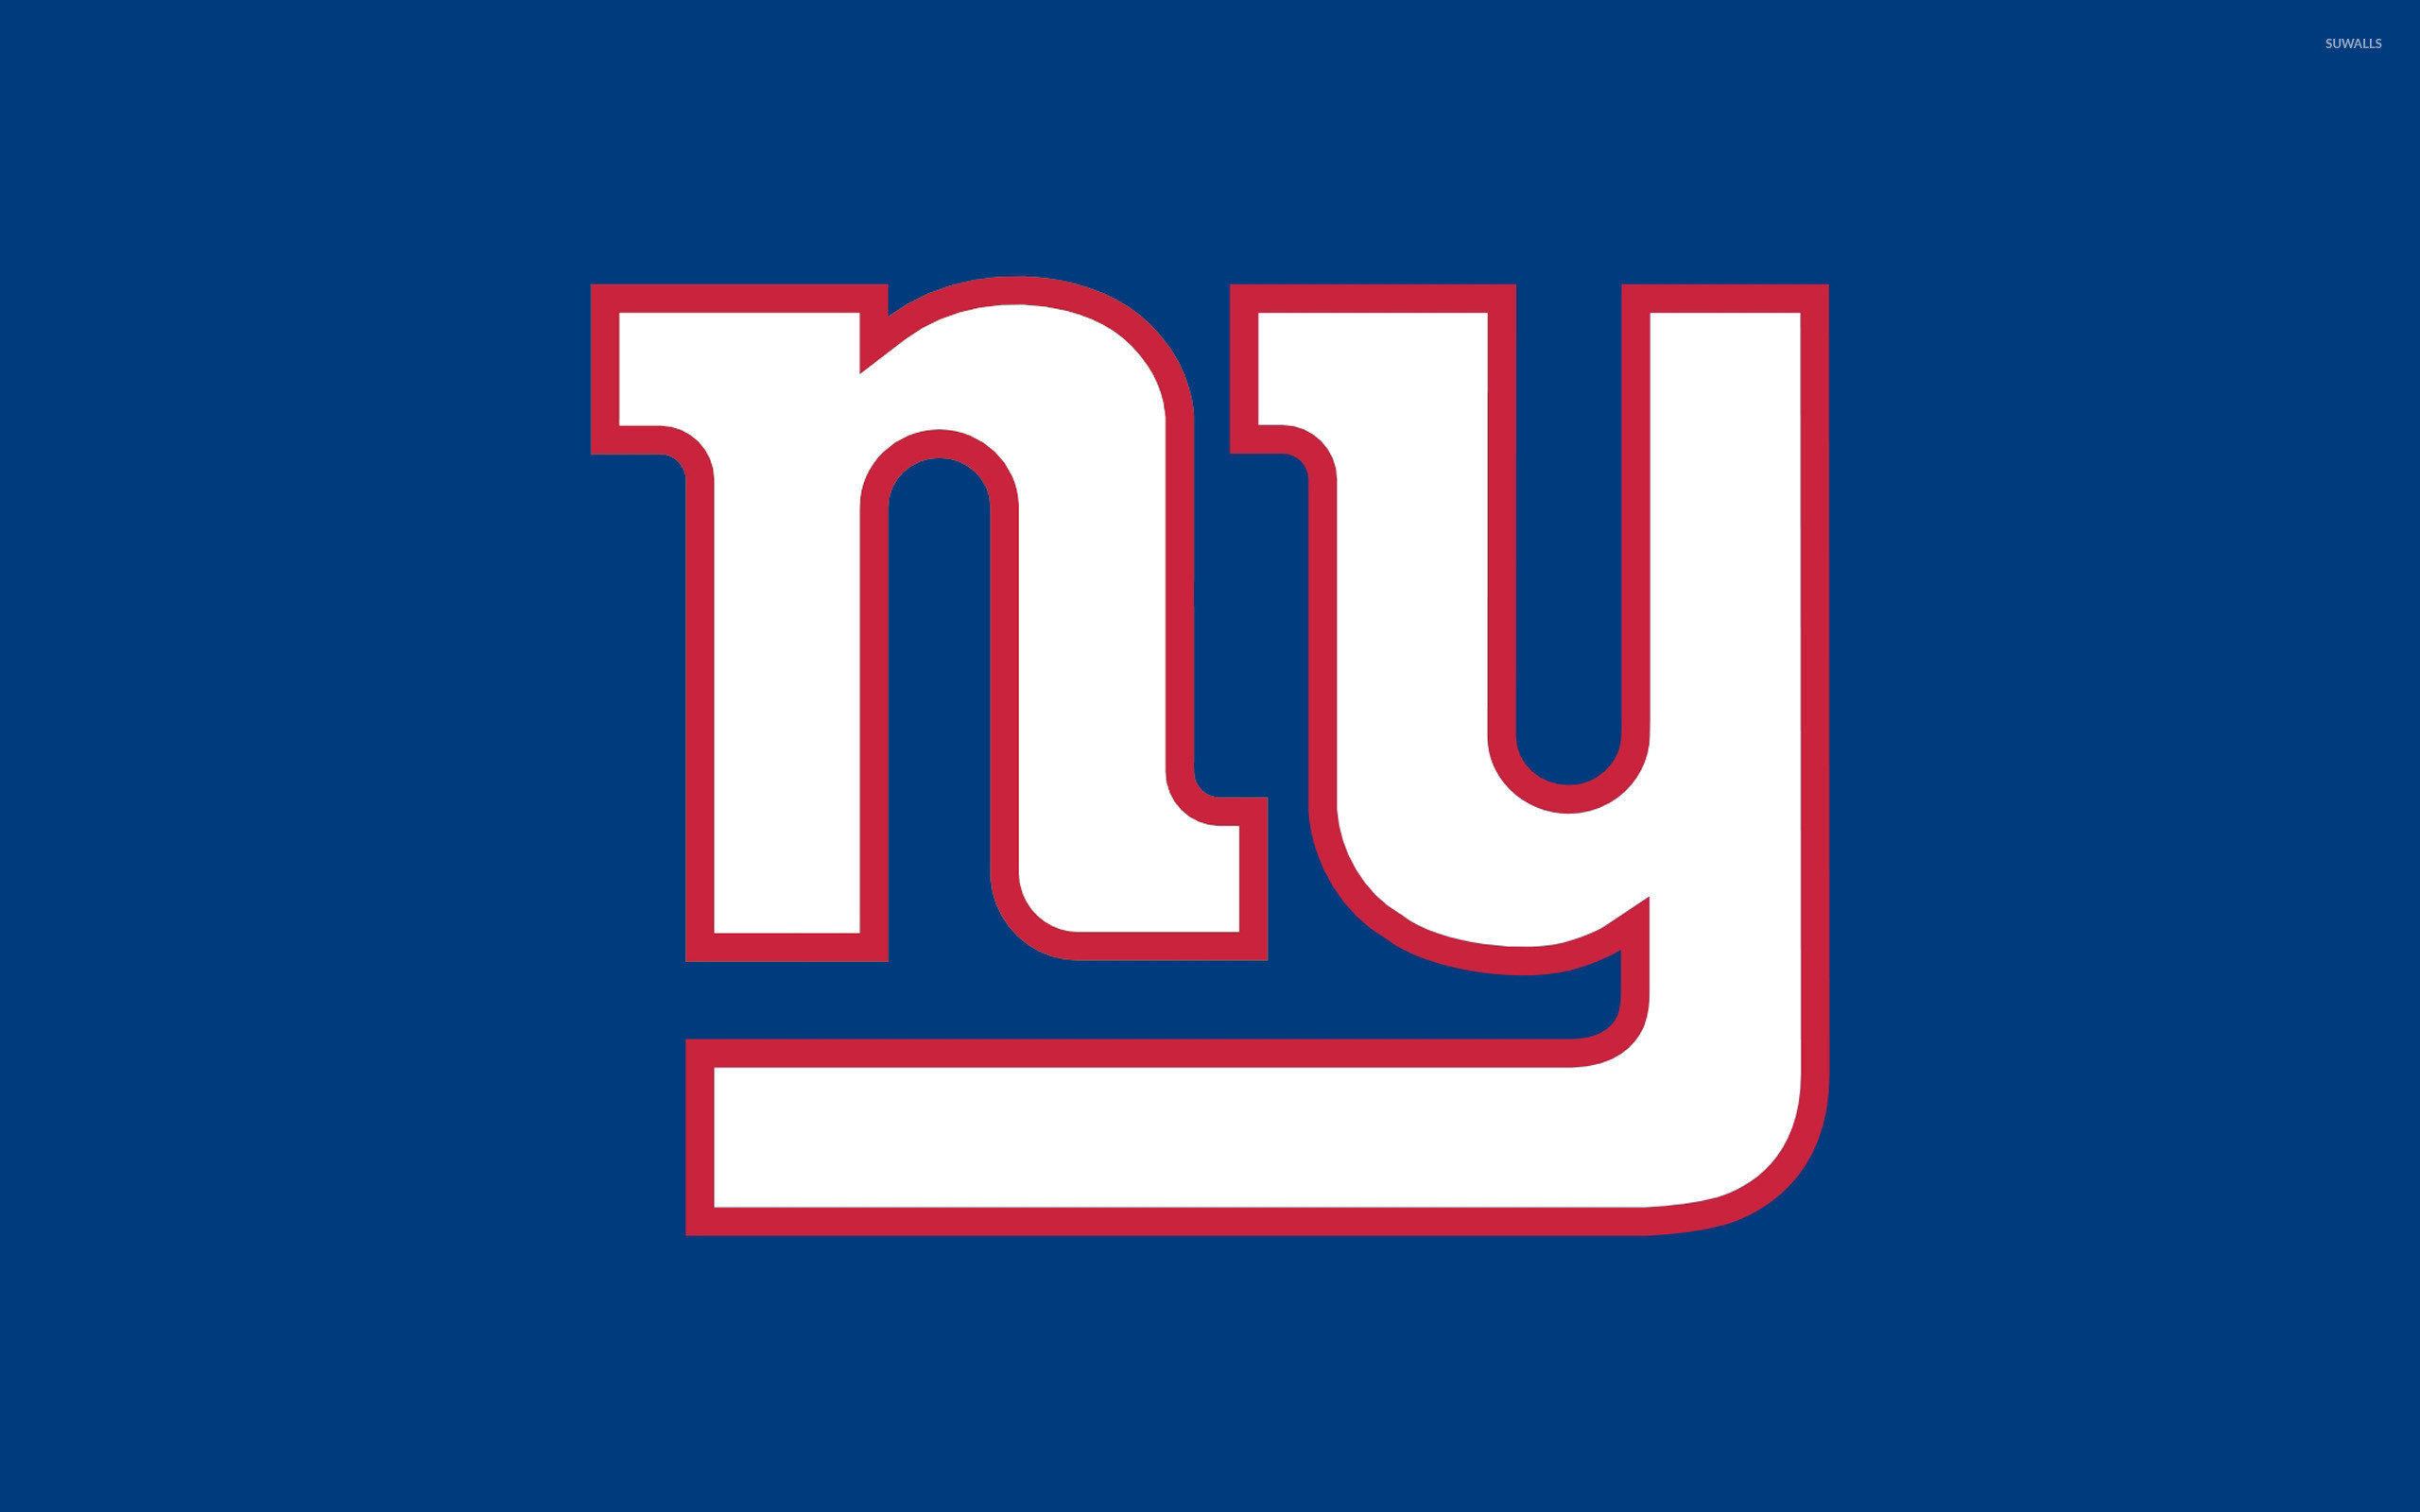 2560x1600 New York Giants logo wallpaper